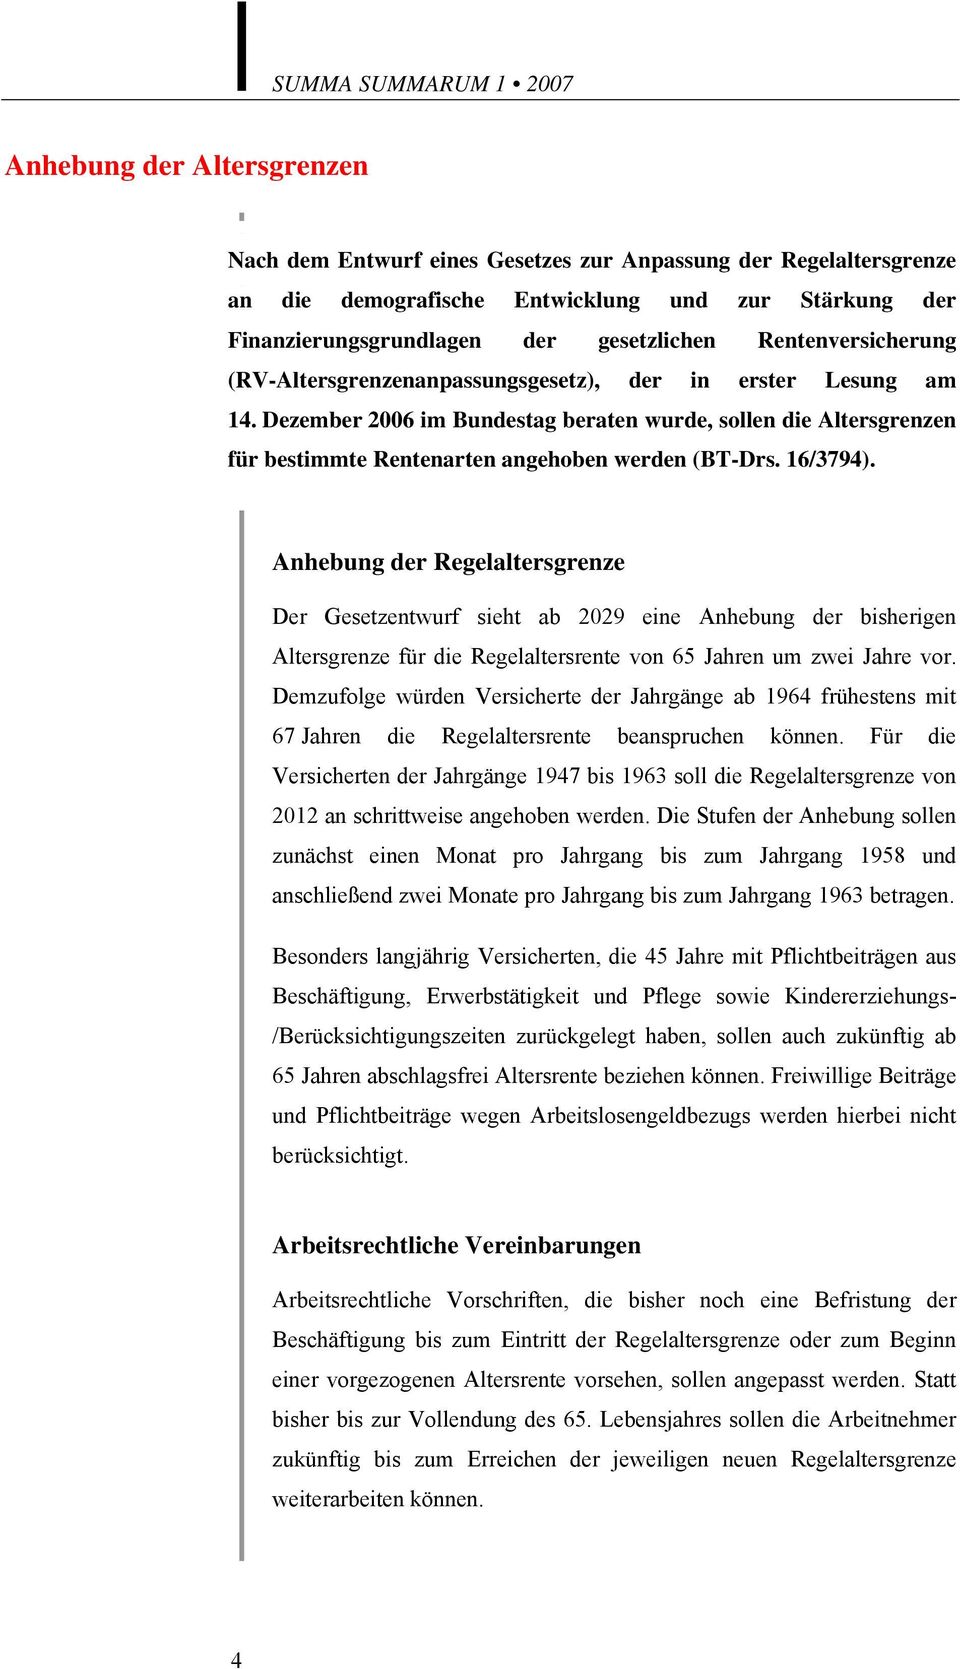 Dezember 2006 im Bundestag beraten wurde, sollen die Altersgrenzen für bestimmte Rentenarten angehoben werden (BT-Drs. 16/3794).